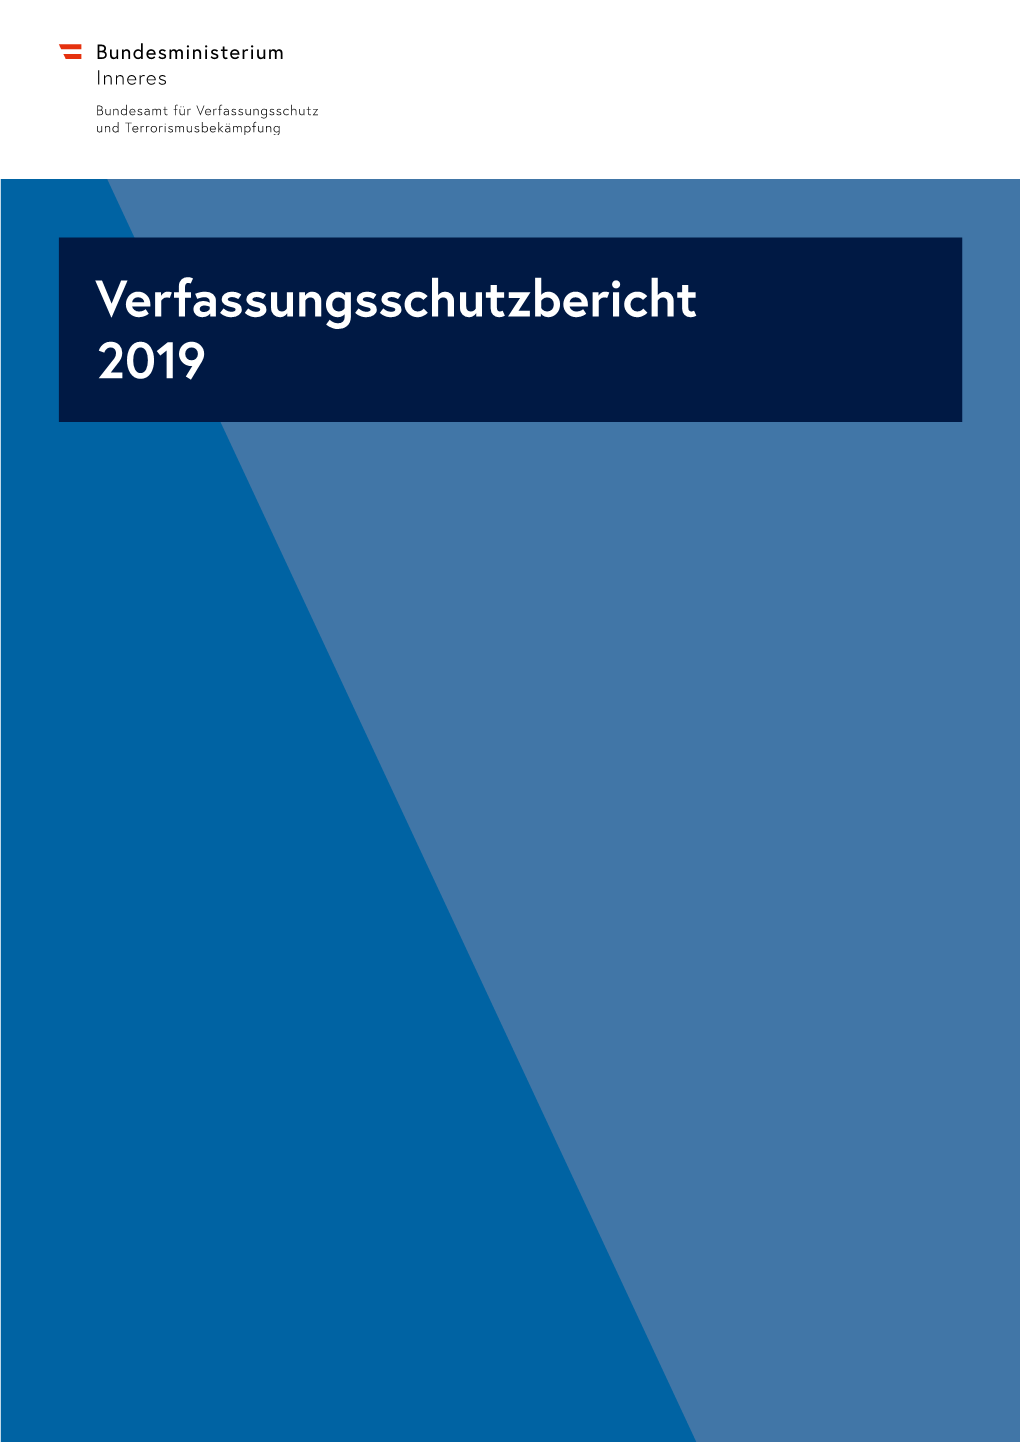 Verfassungsschutzbericht 2019